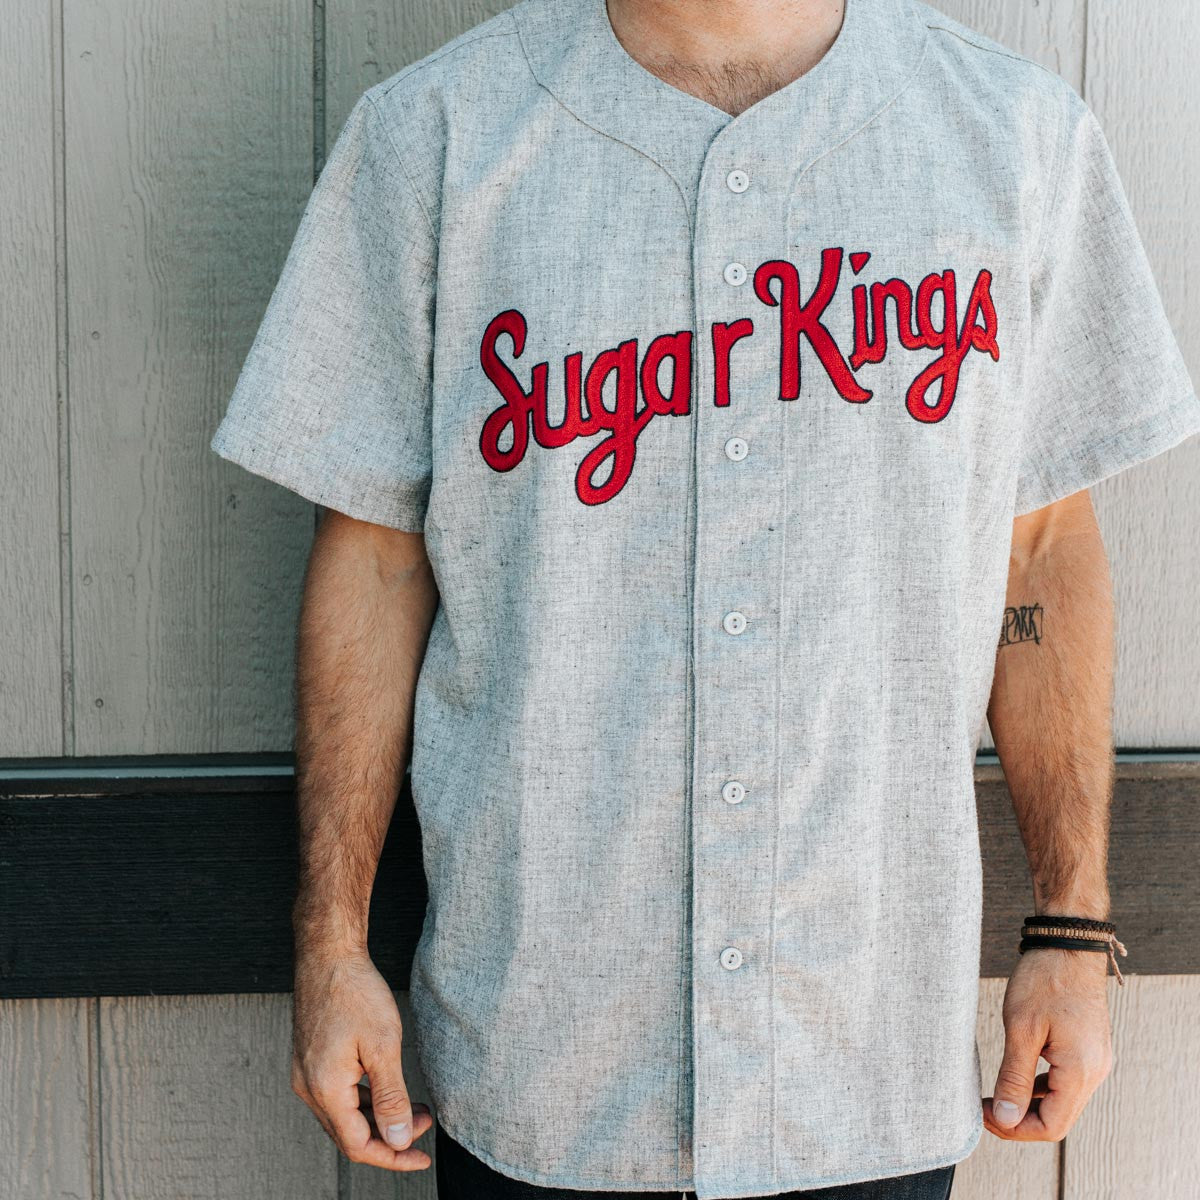 havana sugar kings jersey